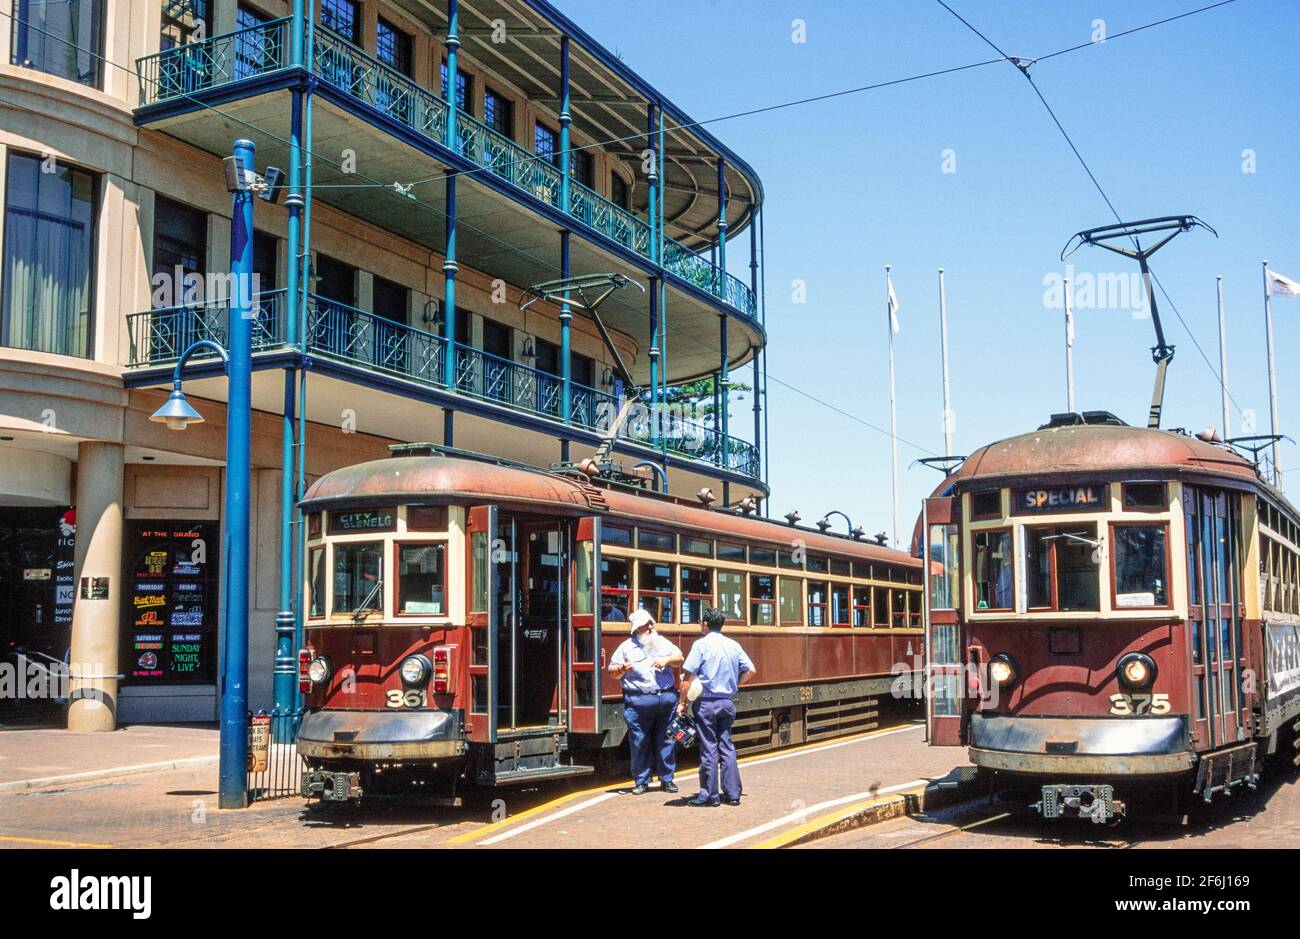 2001 Glenelg Adelaide South Australia - vecchi tram alla fermata del tram Glenelg. Due tram di tipo H aspettano al capolinea di Moseley Square prima della riconfigurazione della fermata. Il tram di tipo H Adelaide era una classe di 30 tram costruiti da UN Pengelly & Co, Adelaide nel 1929 per essere utilizzati sulla linea del tram Glenelg. Hanno operato il servizio fino alla sostituzione con Bombardier Flexity Classics nel 2006. La linea del tram Glenelg è una linea di tram/ferrovia leggera ad Adelaide. Moseley Square è una piazza pubblica nella città di Holdfast Bay a Glenelg ed è il capolinea della linea del tram Glenelg Foto Stock